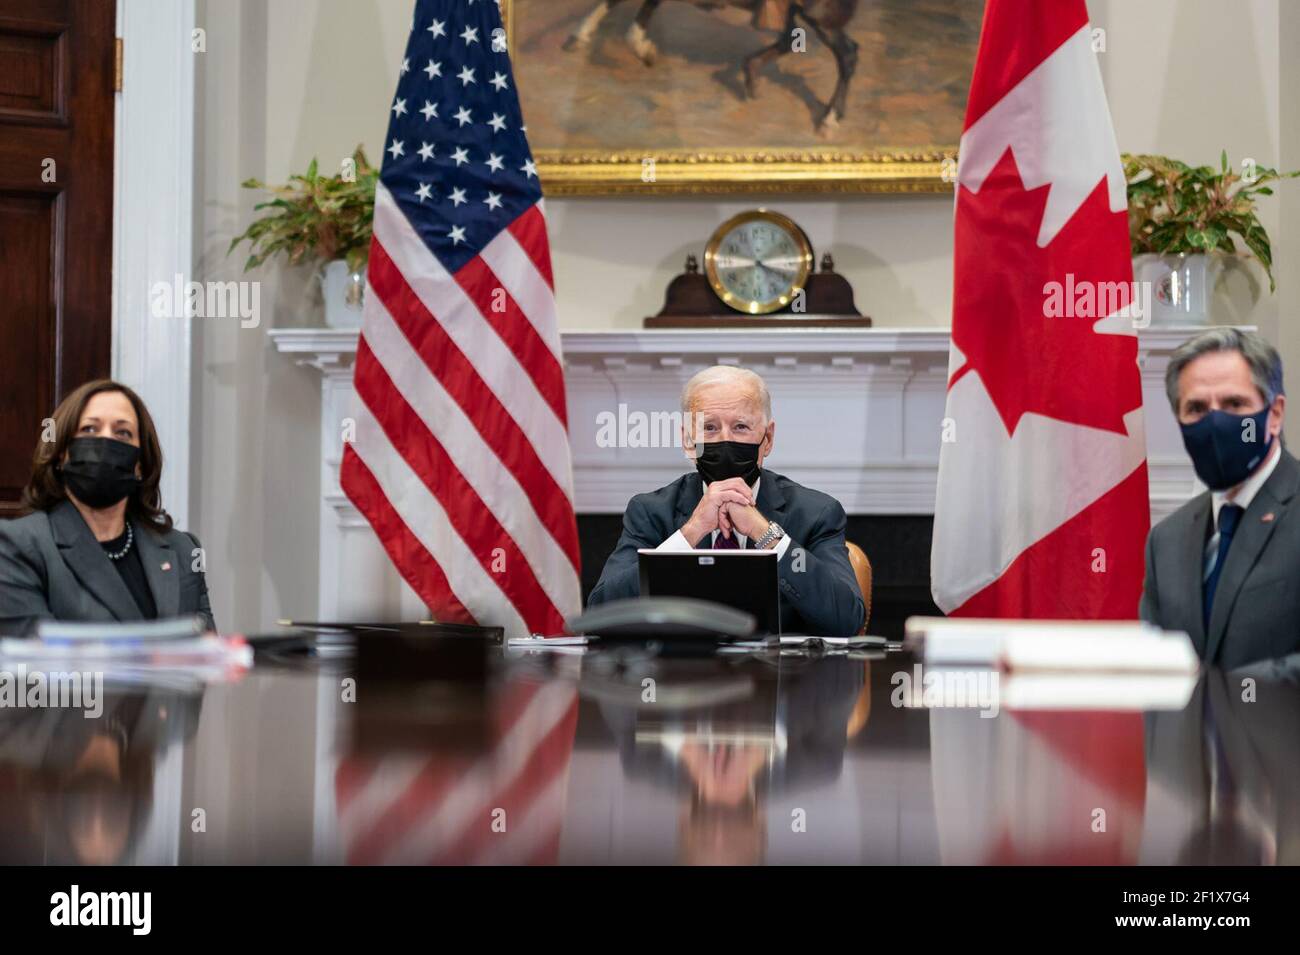 Le président Joe Biden et le vice-président Kamala Harris, accompagnés du secrétaire d'État Antony Blinken, participent à une réunion bilatérale virtuelle avec le premier ministre canadien Justin Trudeau le mardi 23 février 2021, dans la salle Roosevelt de la Maison Blanche Banque D'Images